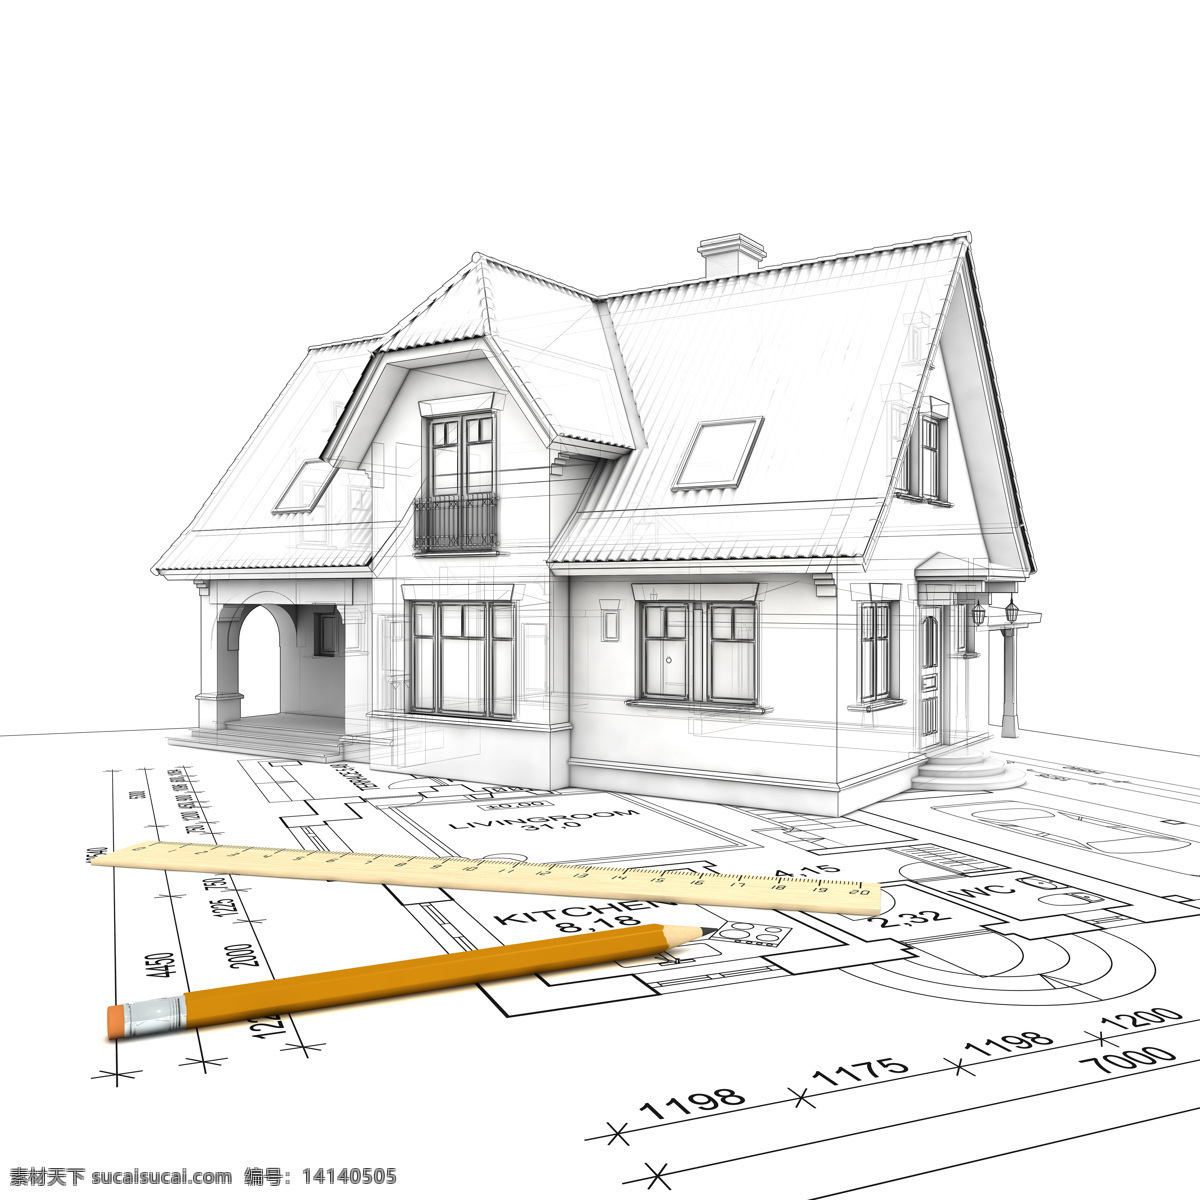 手绘 图纸 虚实 环境 别墅 房子 铅笔 空间 尺子 数字 背景 建筑 3d设计 室内模型